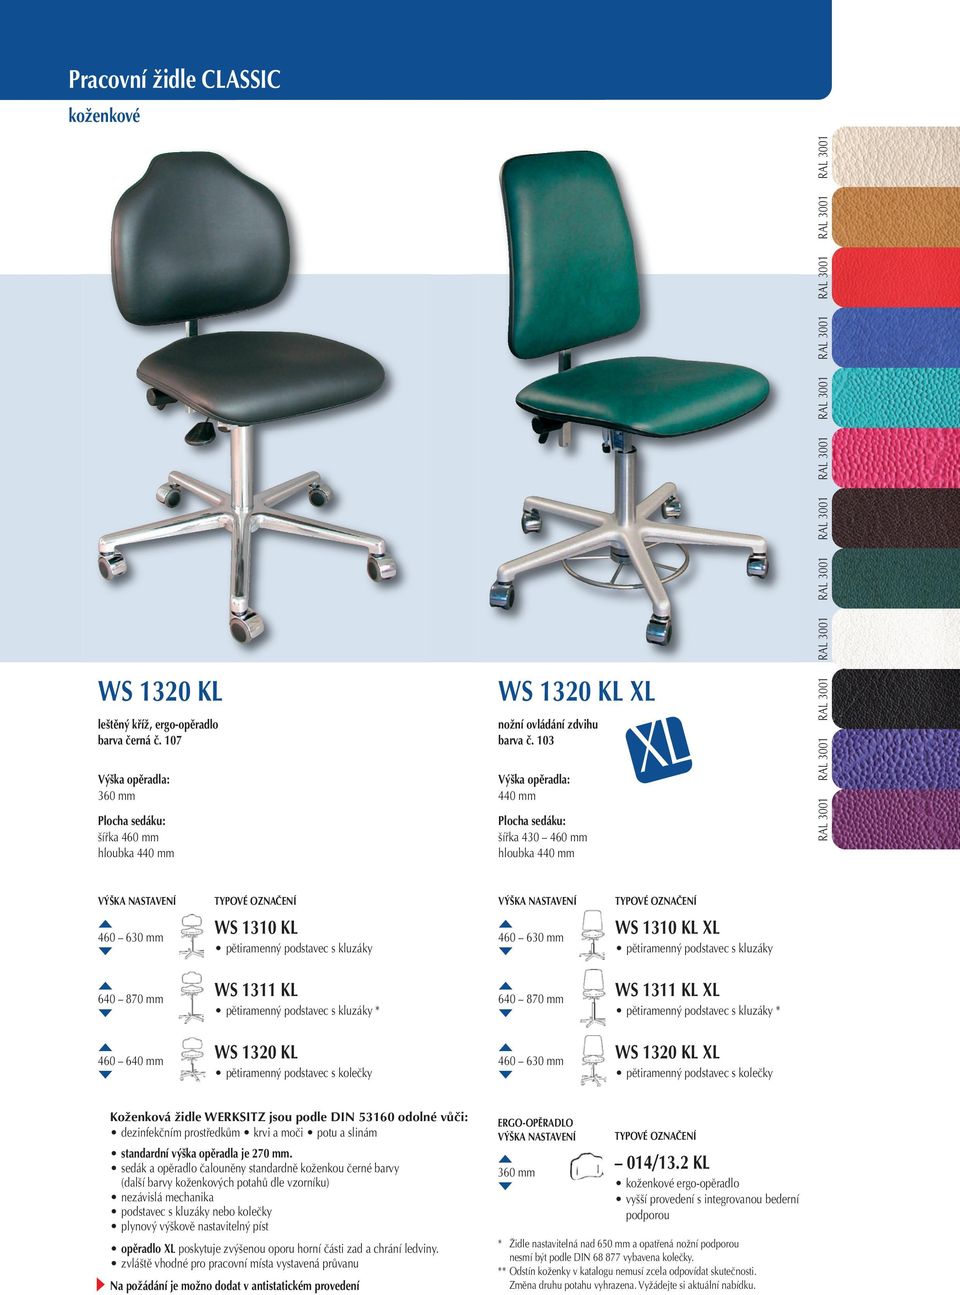 1320 KL XL Koženková židle WERKSITZ jsou podle DIN 53160 odolné vůči: dezinfekčním prostředkům krvi a moči potu a slinám standardní výška opěradla je 270 mm.